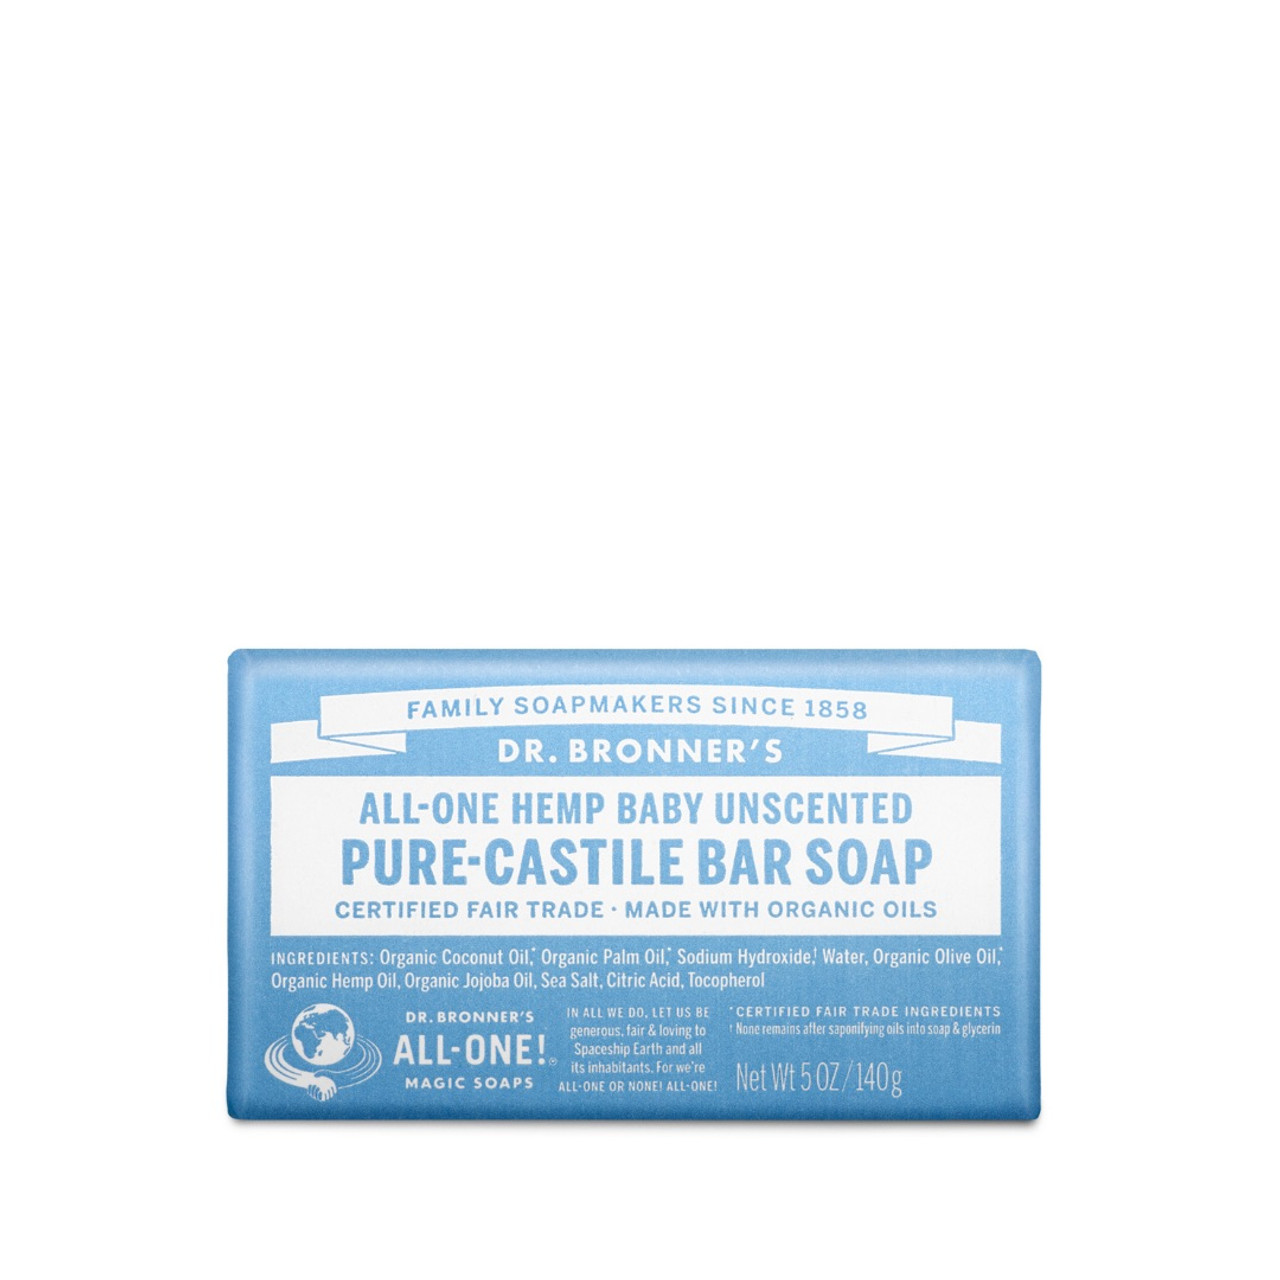 Dr. Bronner's Pure Castile Bar Soap (Baby-Mild) 140g 